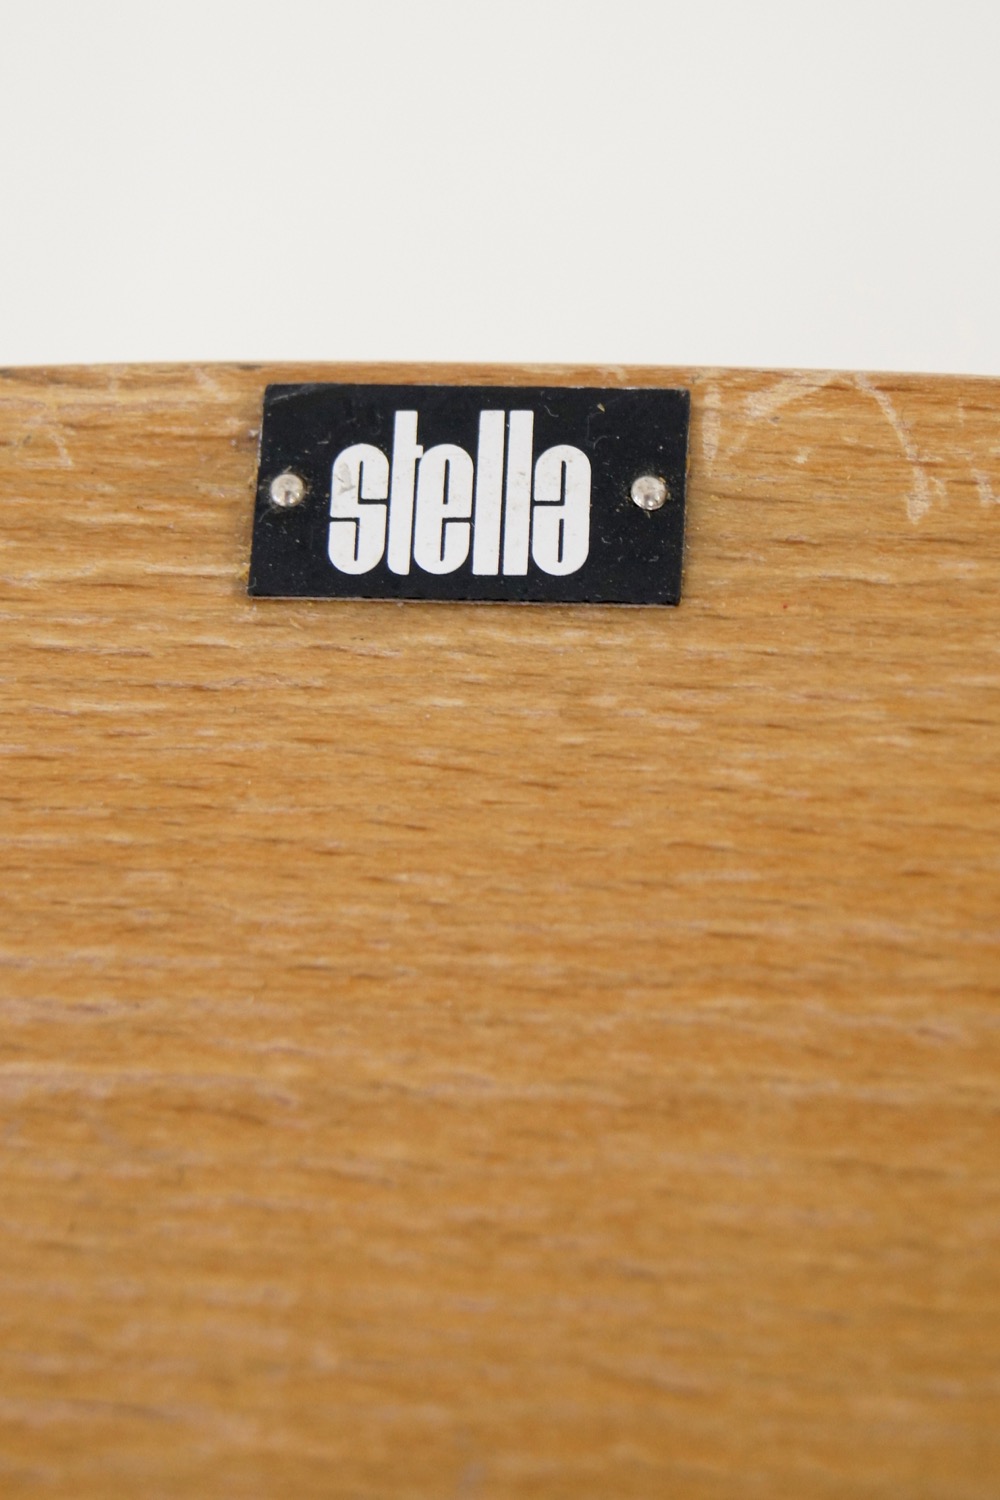 50er-Jahre Design Stuhl Stella